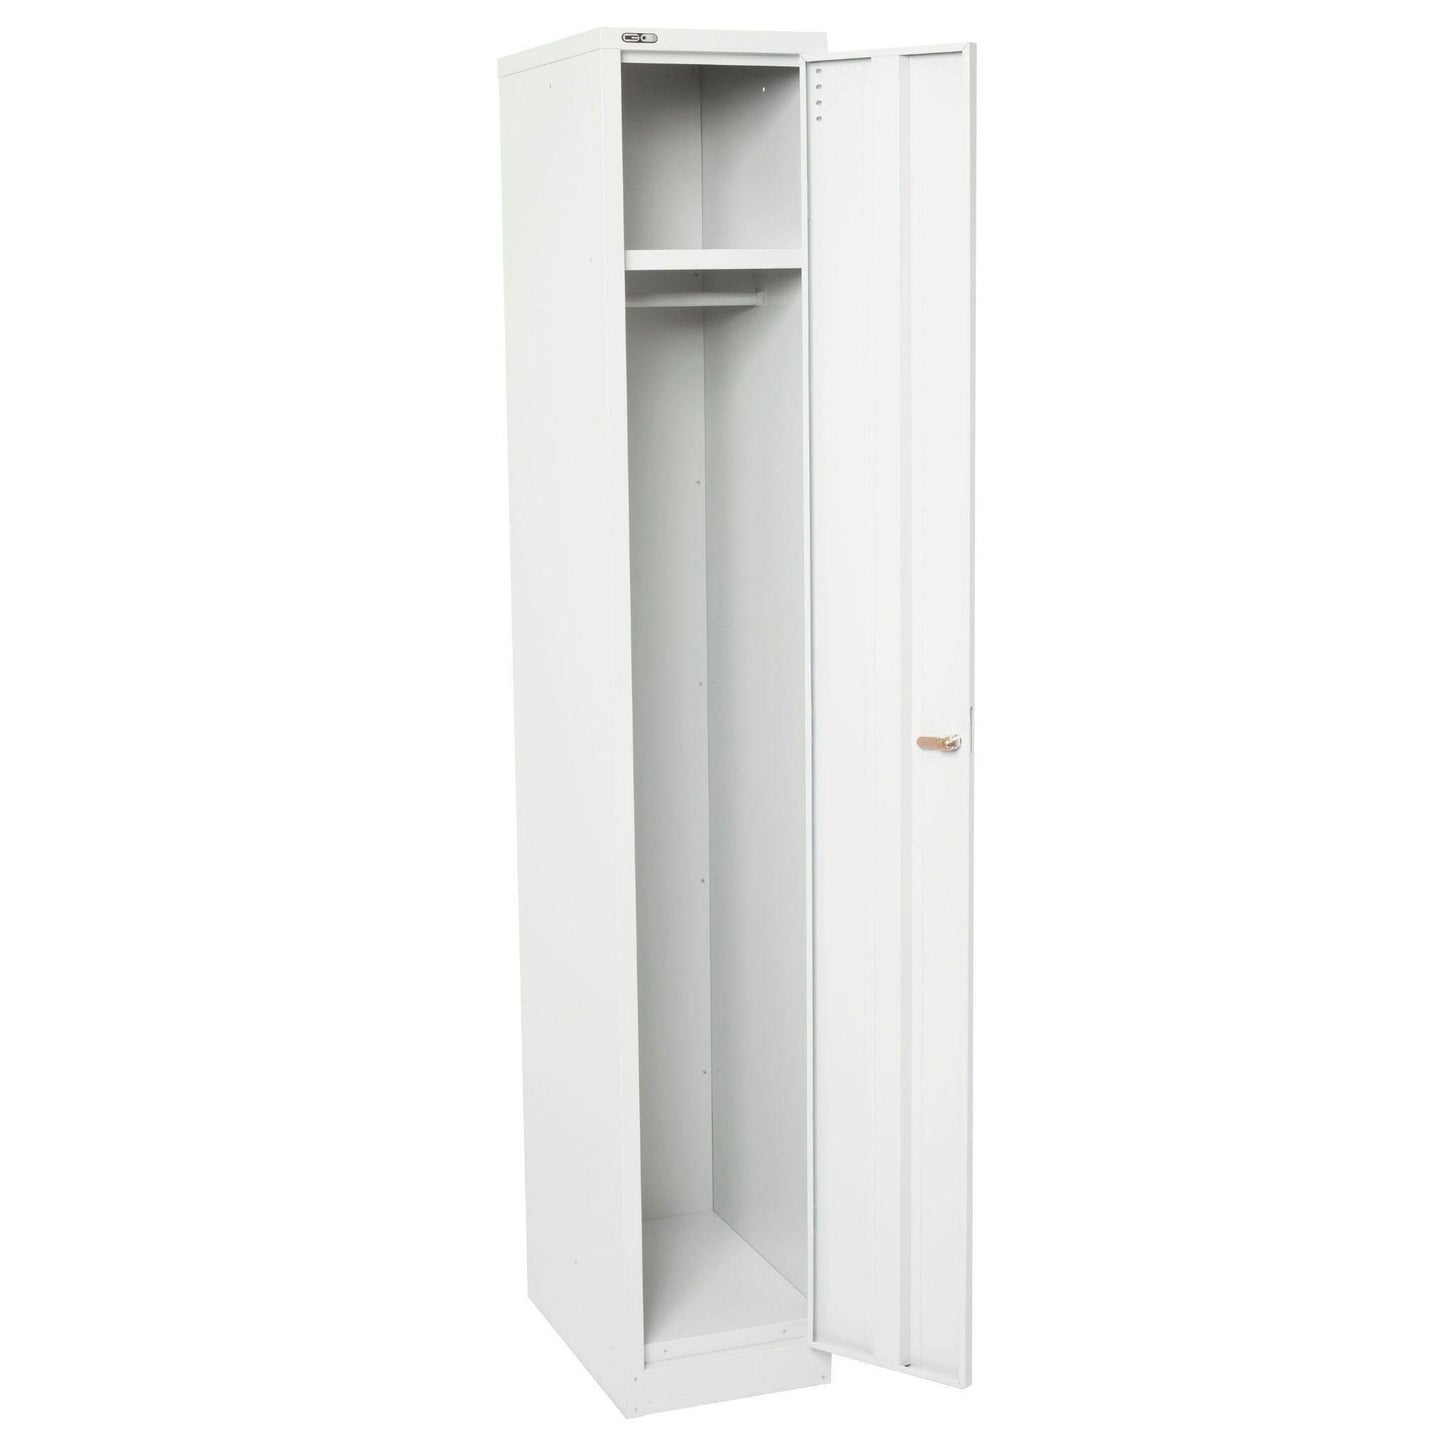 Go Single Door Steel Locker in Silver Grey - Office Furniture Company 